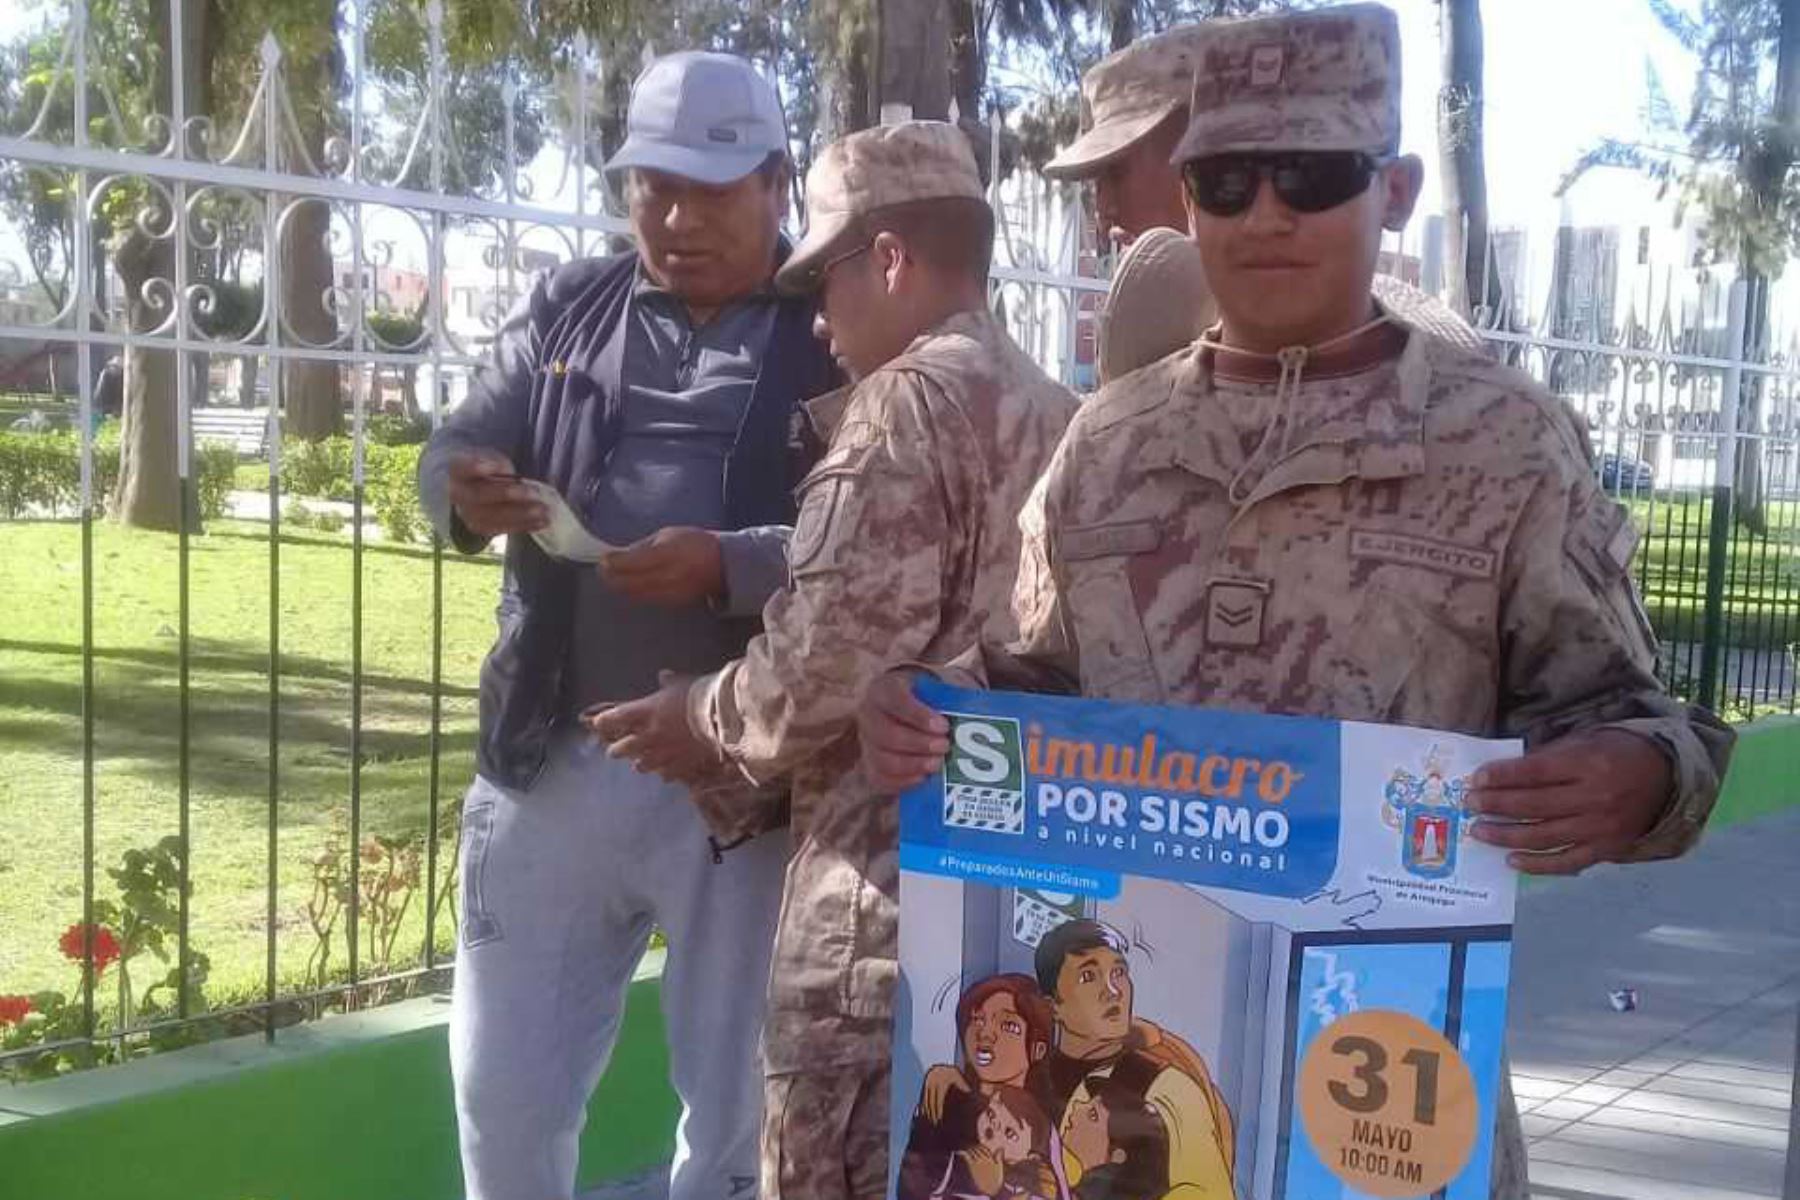 Un contingente de soldados del cuartel Mariano Bustamante de Arequipa participan desde hoy en la distribución de cartillas de seguridad y acciones de sensibilización a la población con miras al desarrollo del simulacro de sismo que se realizará el 31 de mayo a escala nacional.